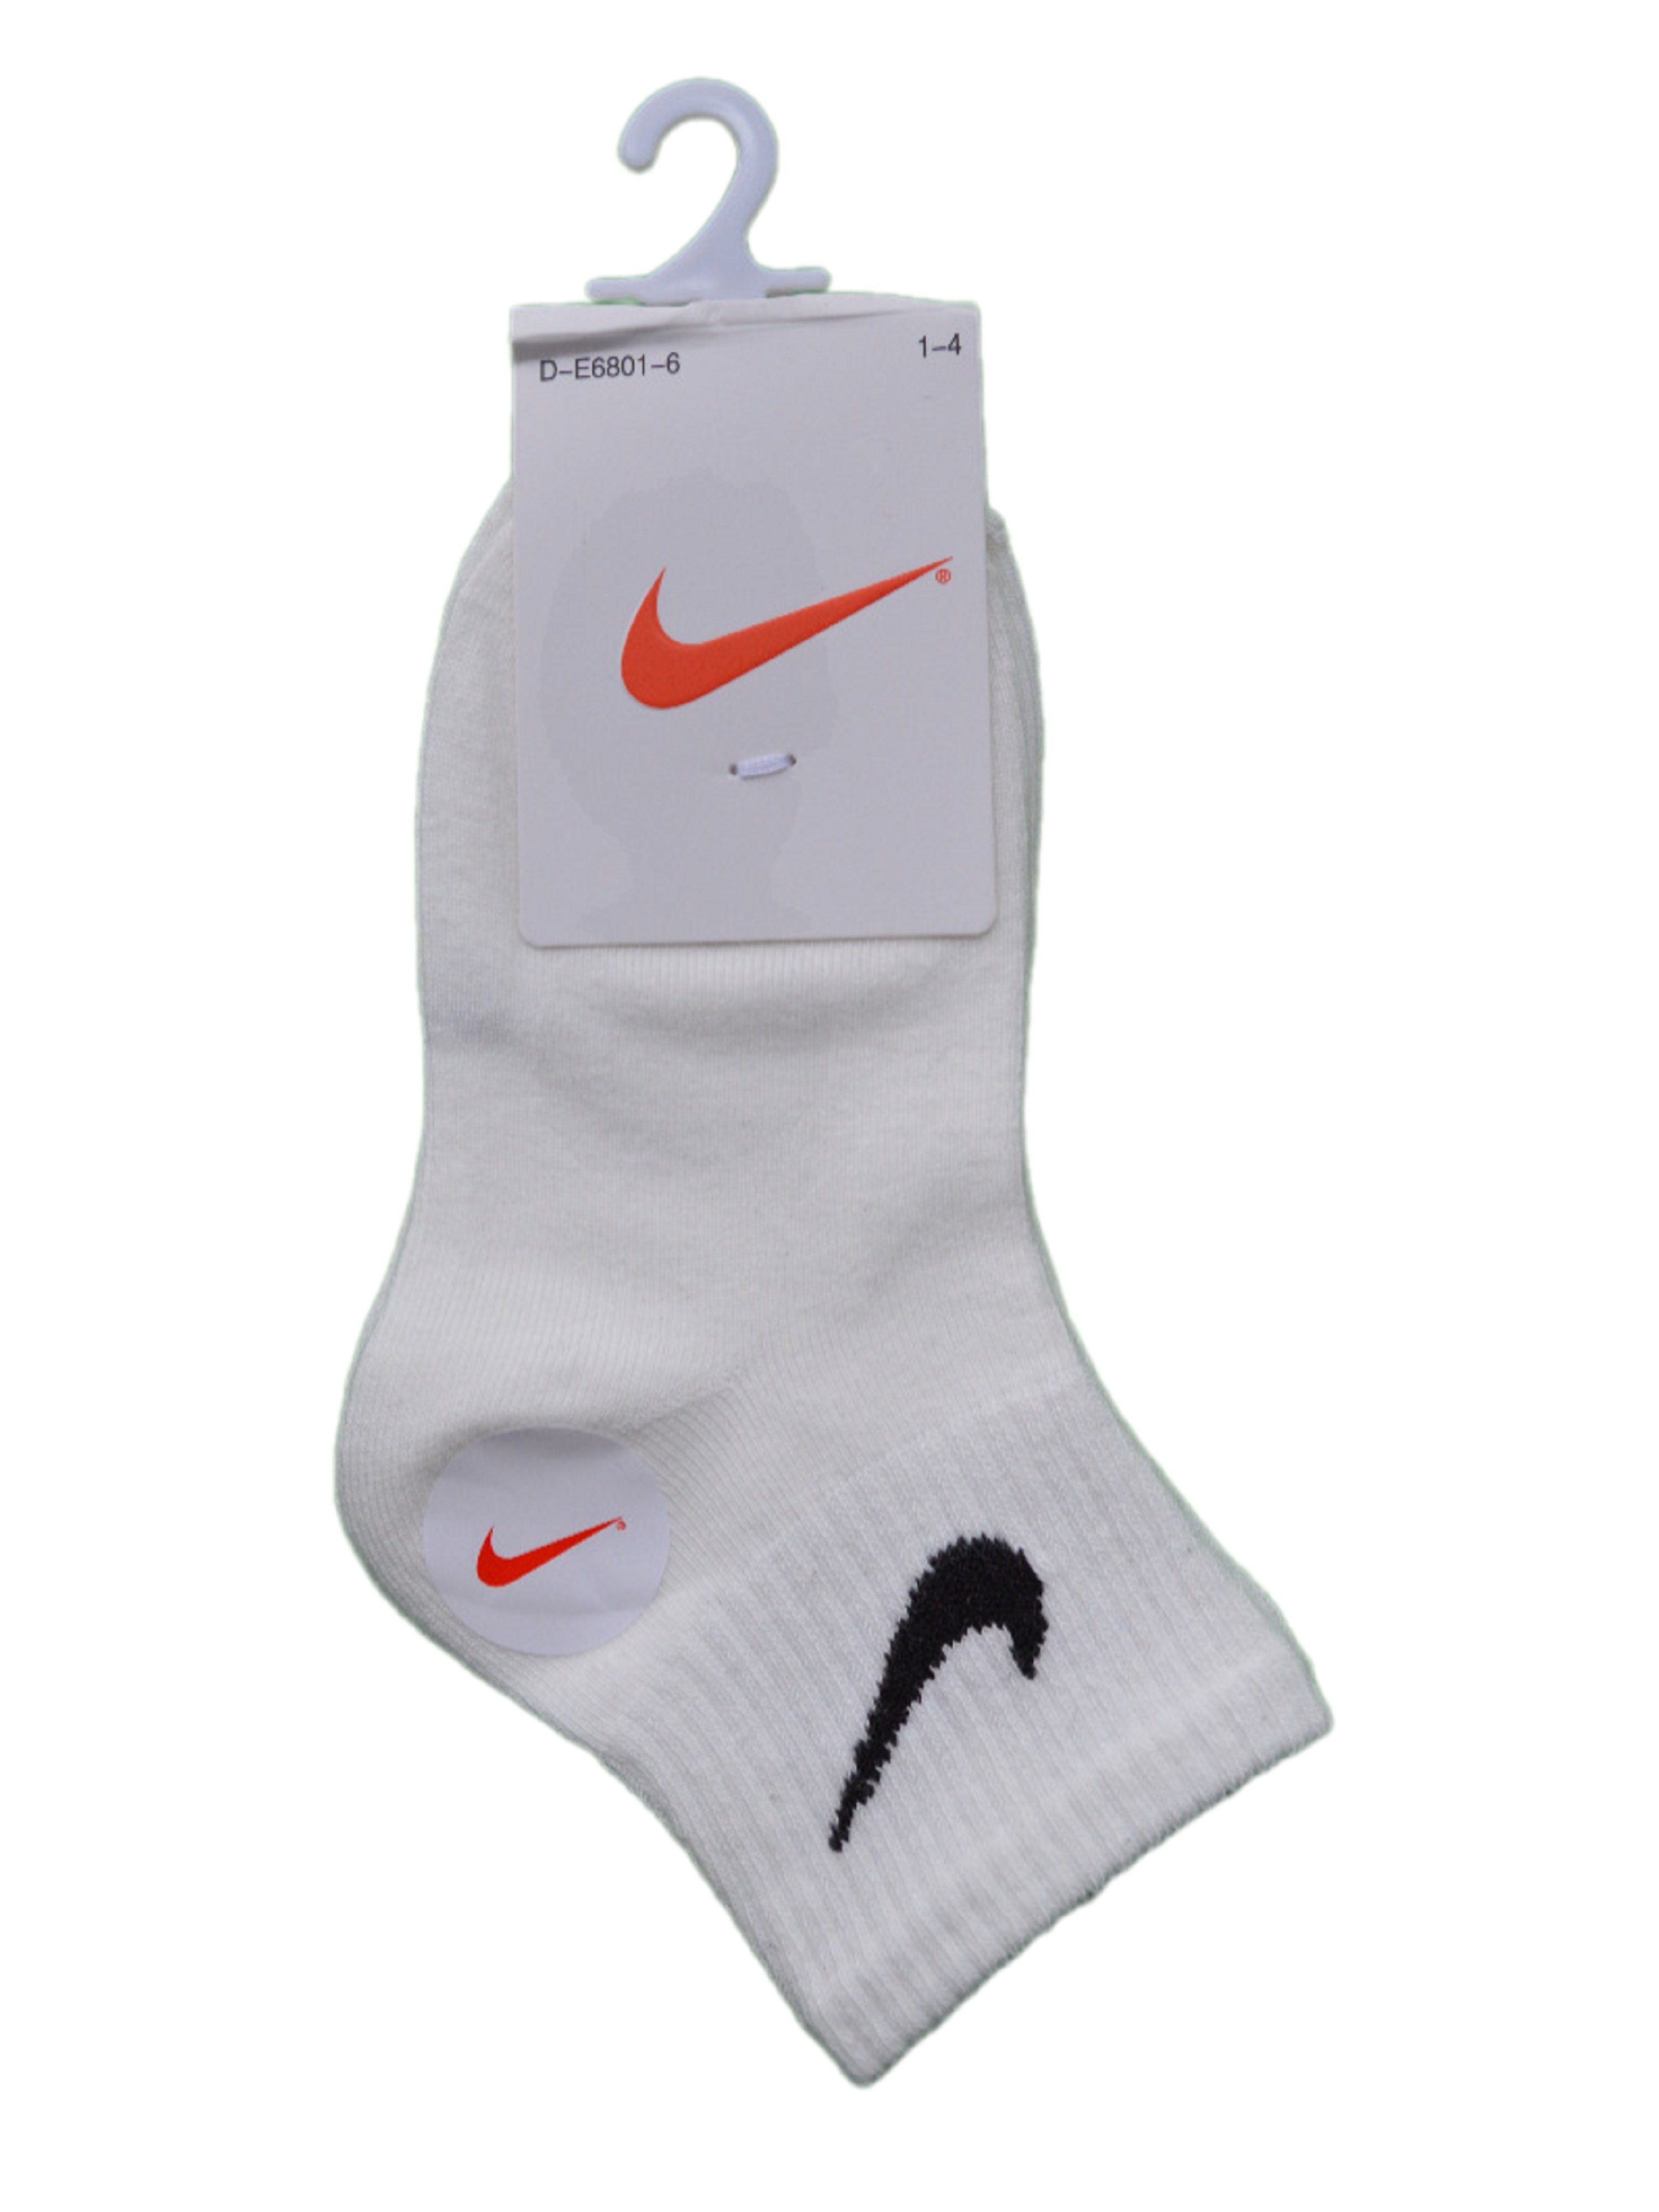 Носки детские Nike Ni-D-E6801-6, белый, 6 кроссовки детские nike star runner 4 nn gs красный